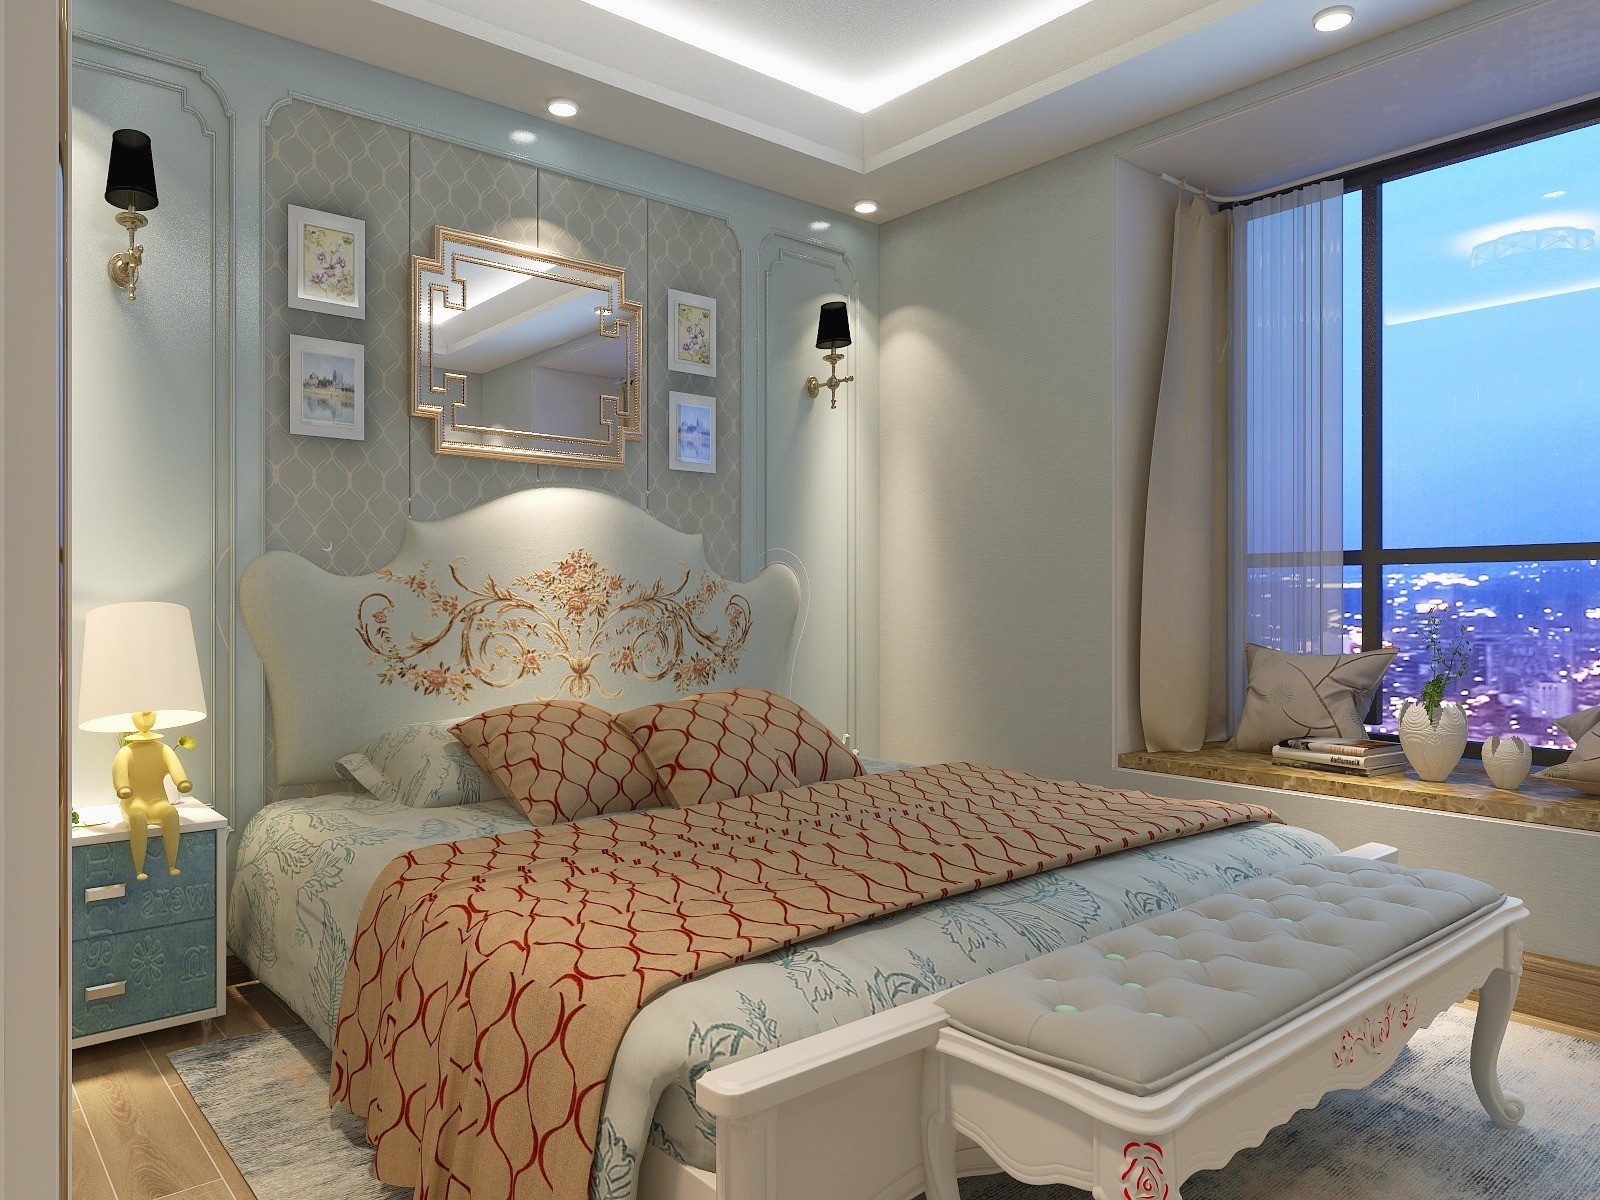 卧室墙面采用暖色系的墙布,较温润的色系可以给人一个安静的休息空间